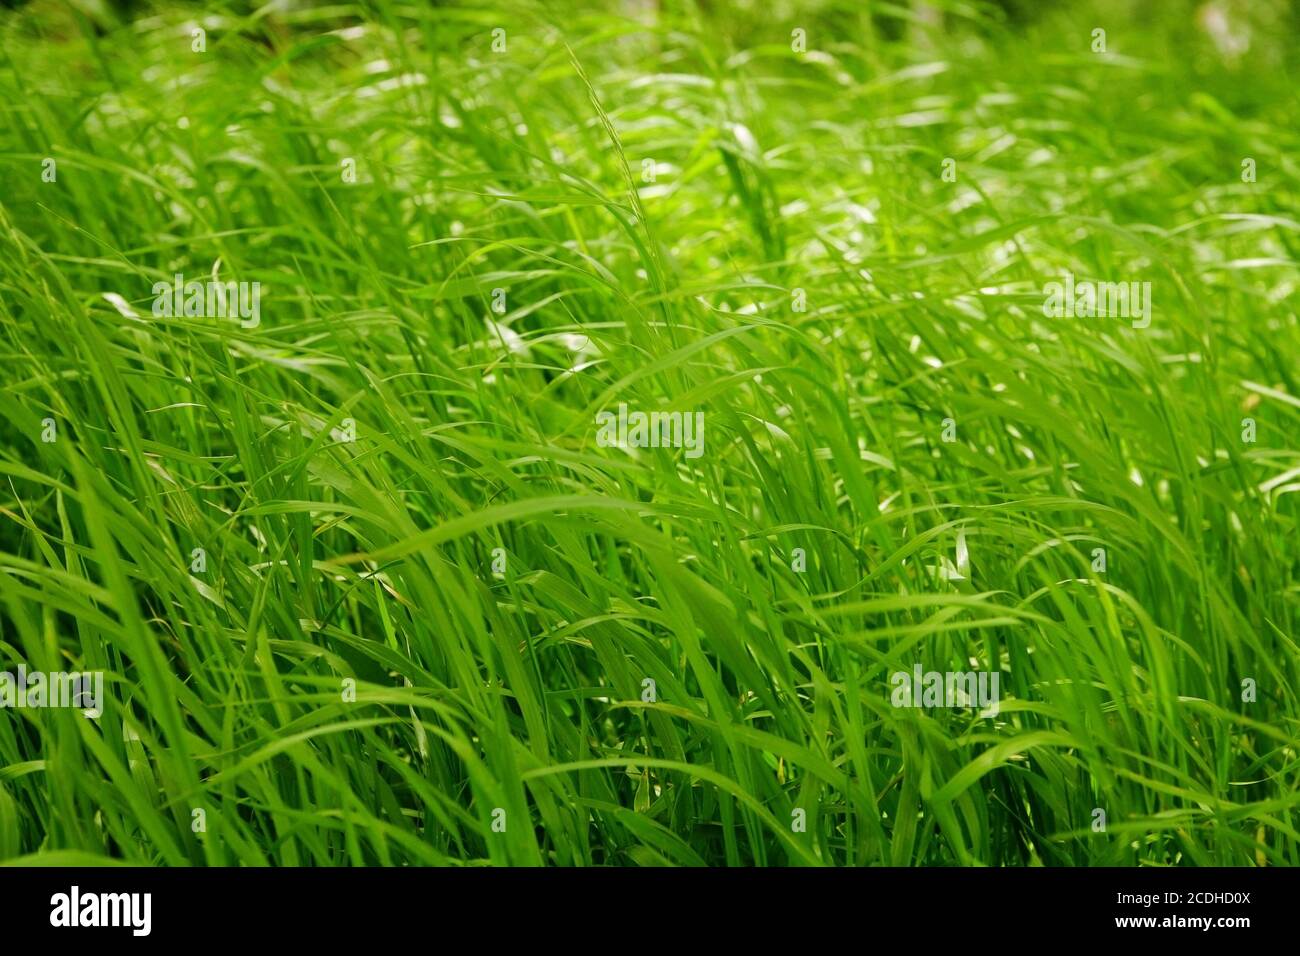 Des lames vertes d'herbe fraîche Banque D'Images